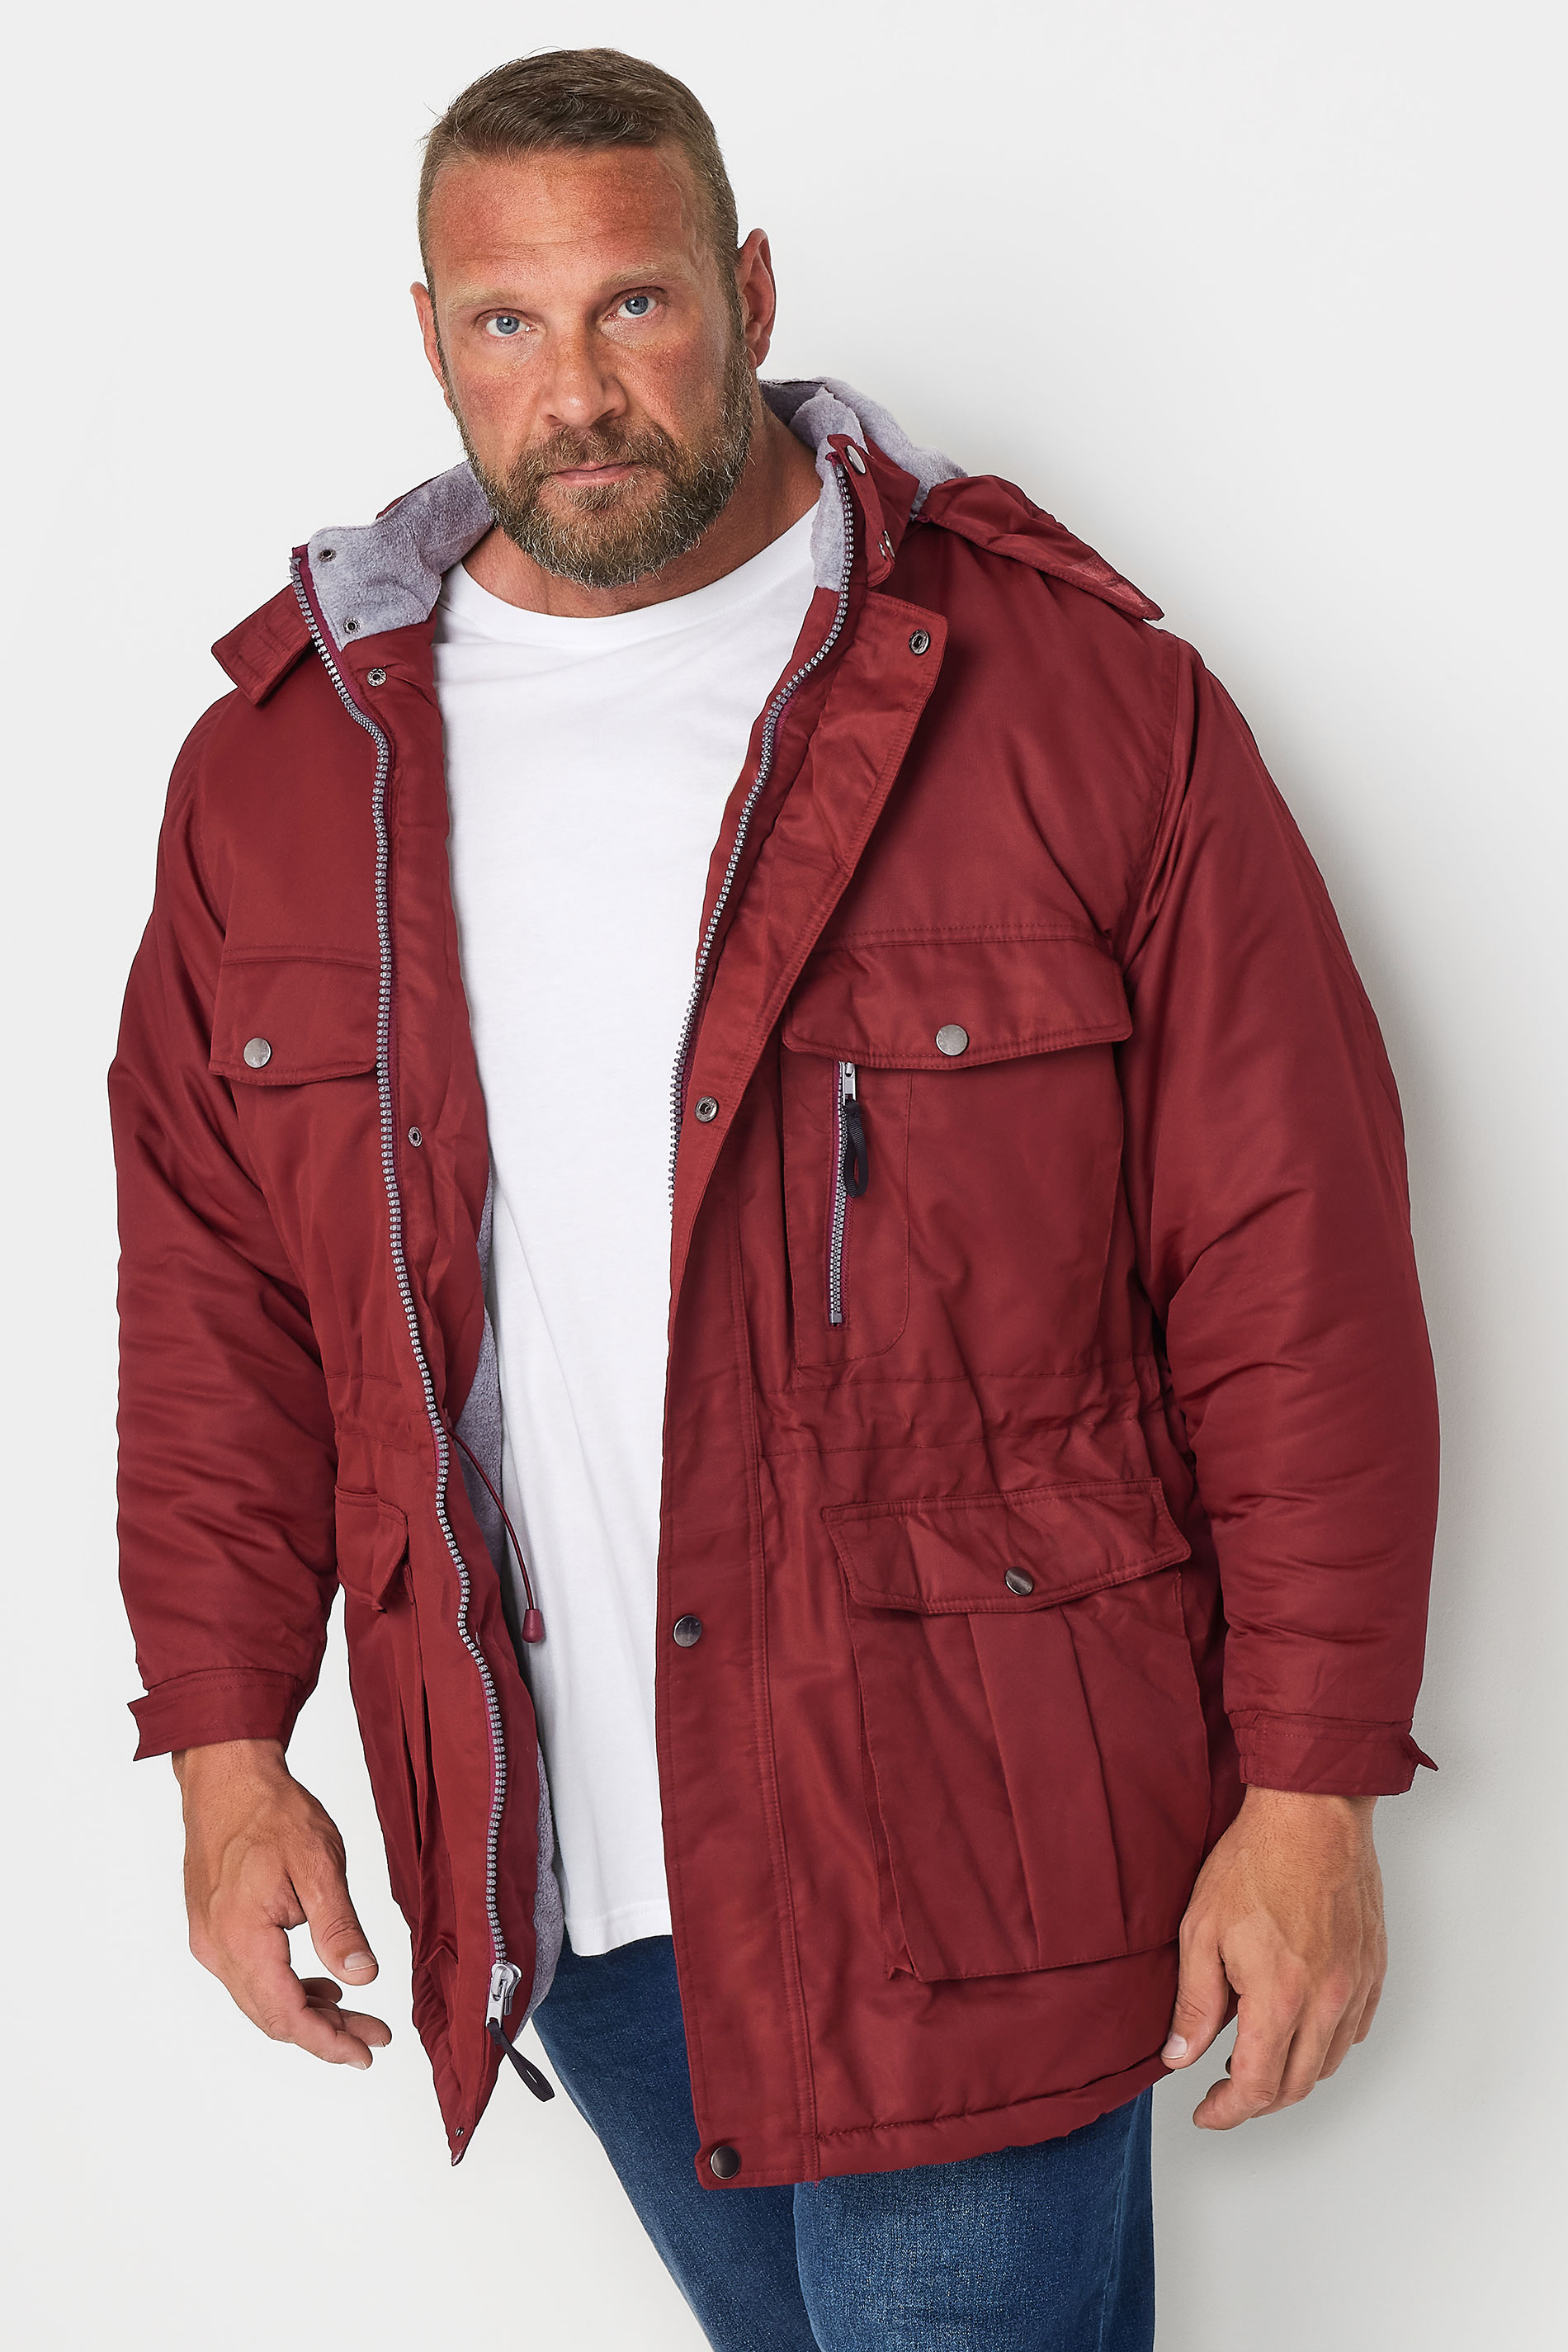 BadRhino Big & Tall Red Fleece Lined Hooded Coat | BadRhino 1